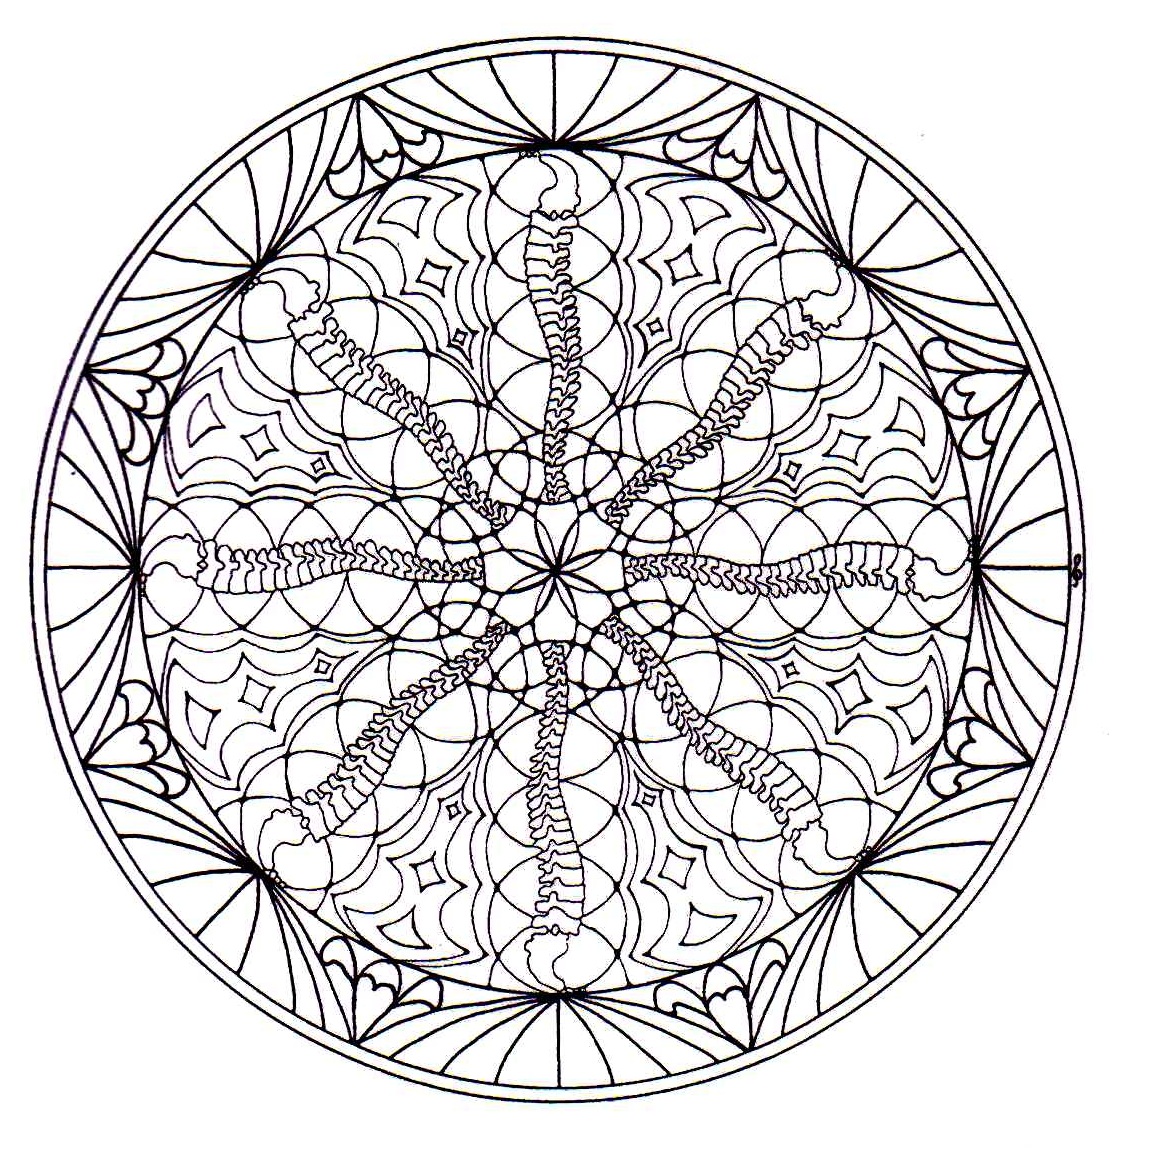 Magnificient natural Mandala drawing. Mandalas offer balancing visual elements, symbolizing unity and harmony.